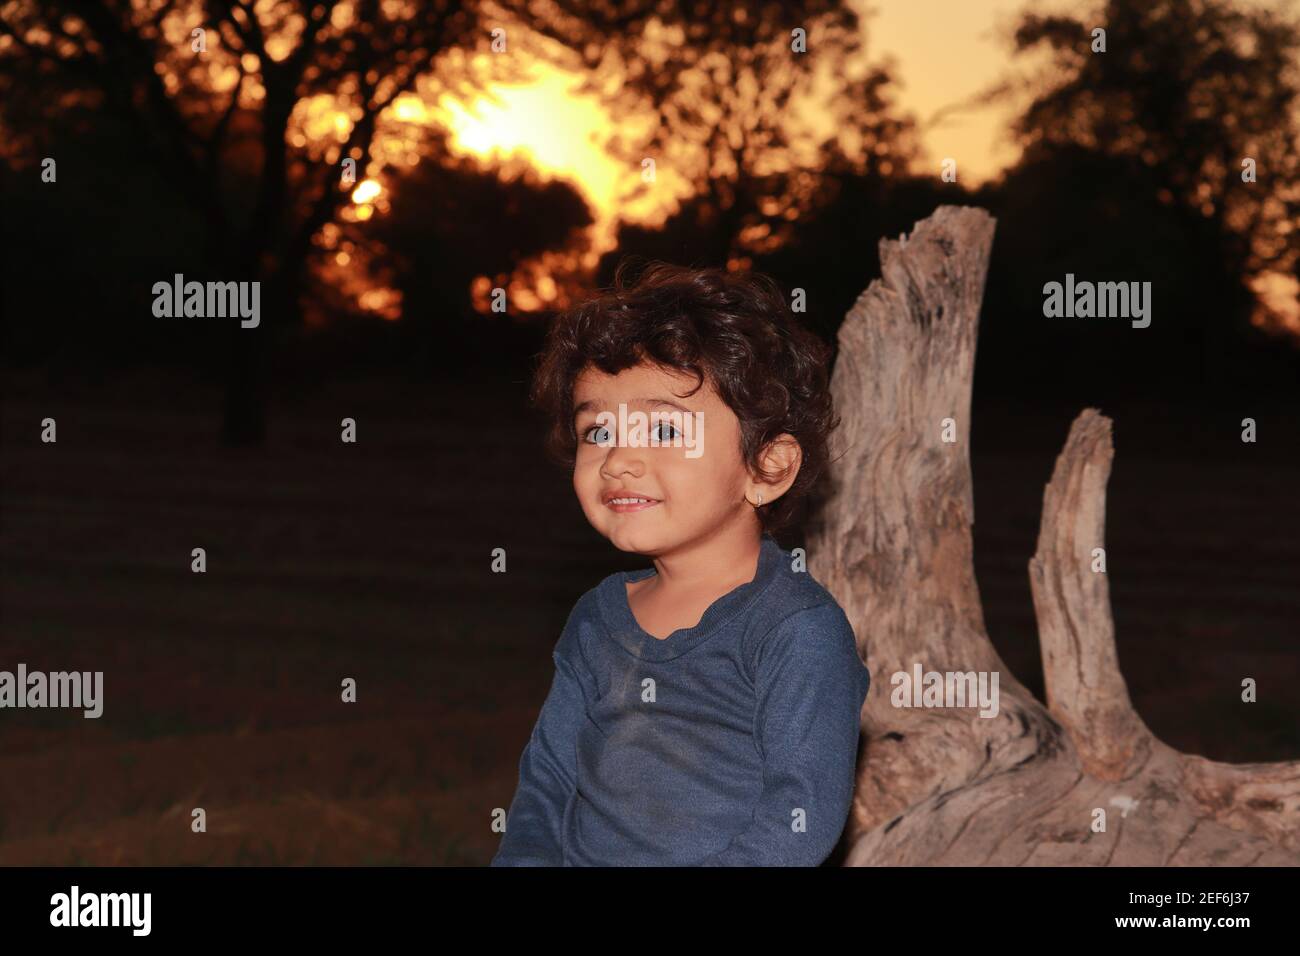 Ein schöner kleiner indischer Junge Kind, sitzt auf einem trockenen Holz im Garten bei Sonnenuntergang, indischer Junge Kind lächelt Blick auf die Kamera. Konzept für Sweet c Stockfoto